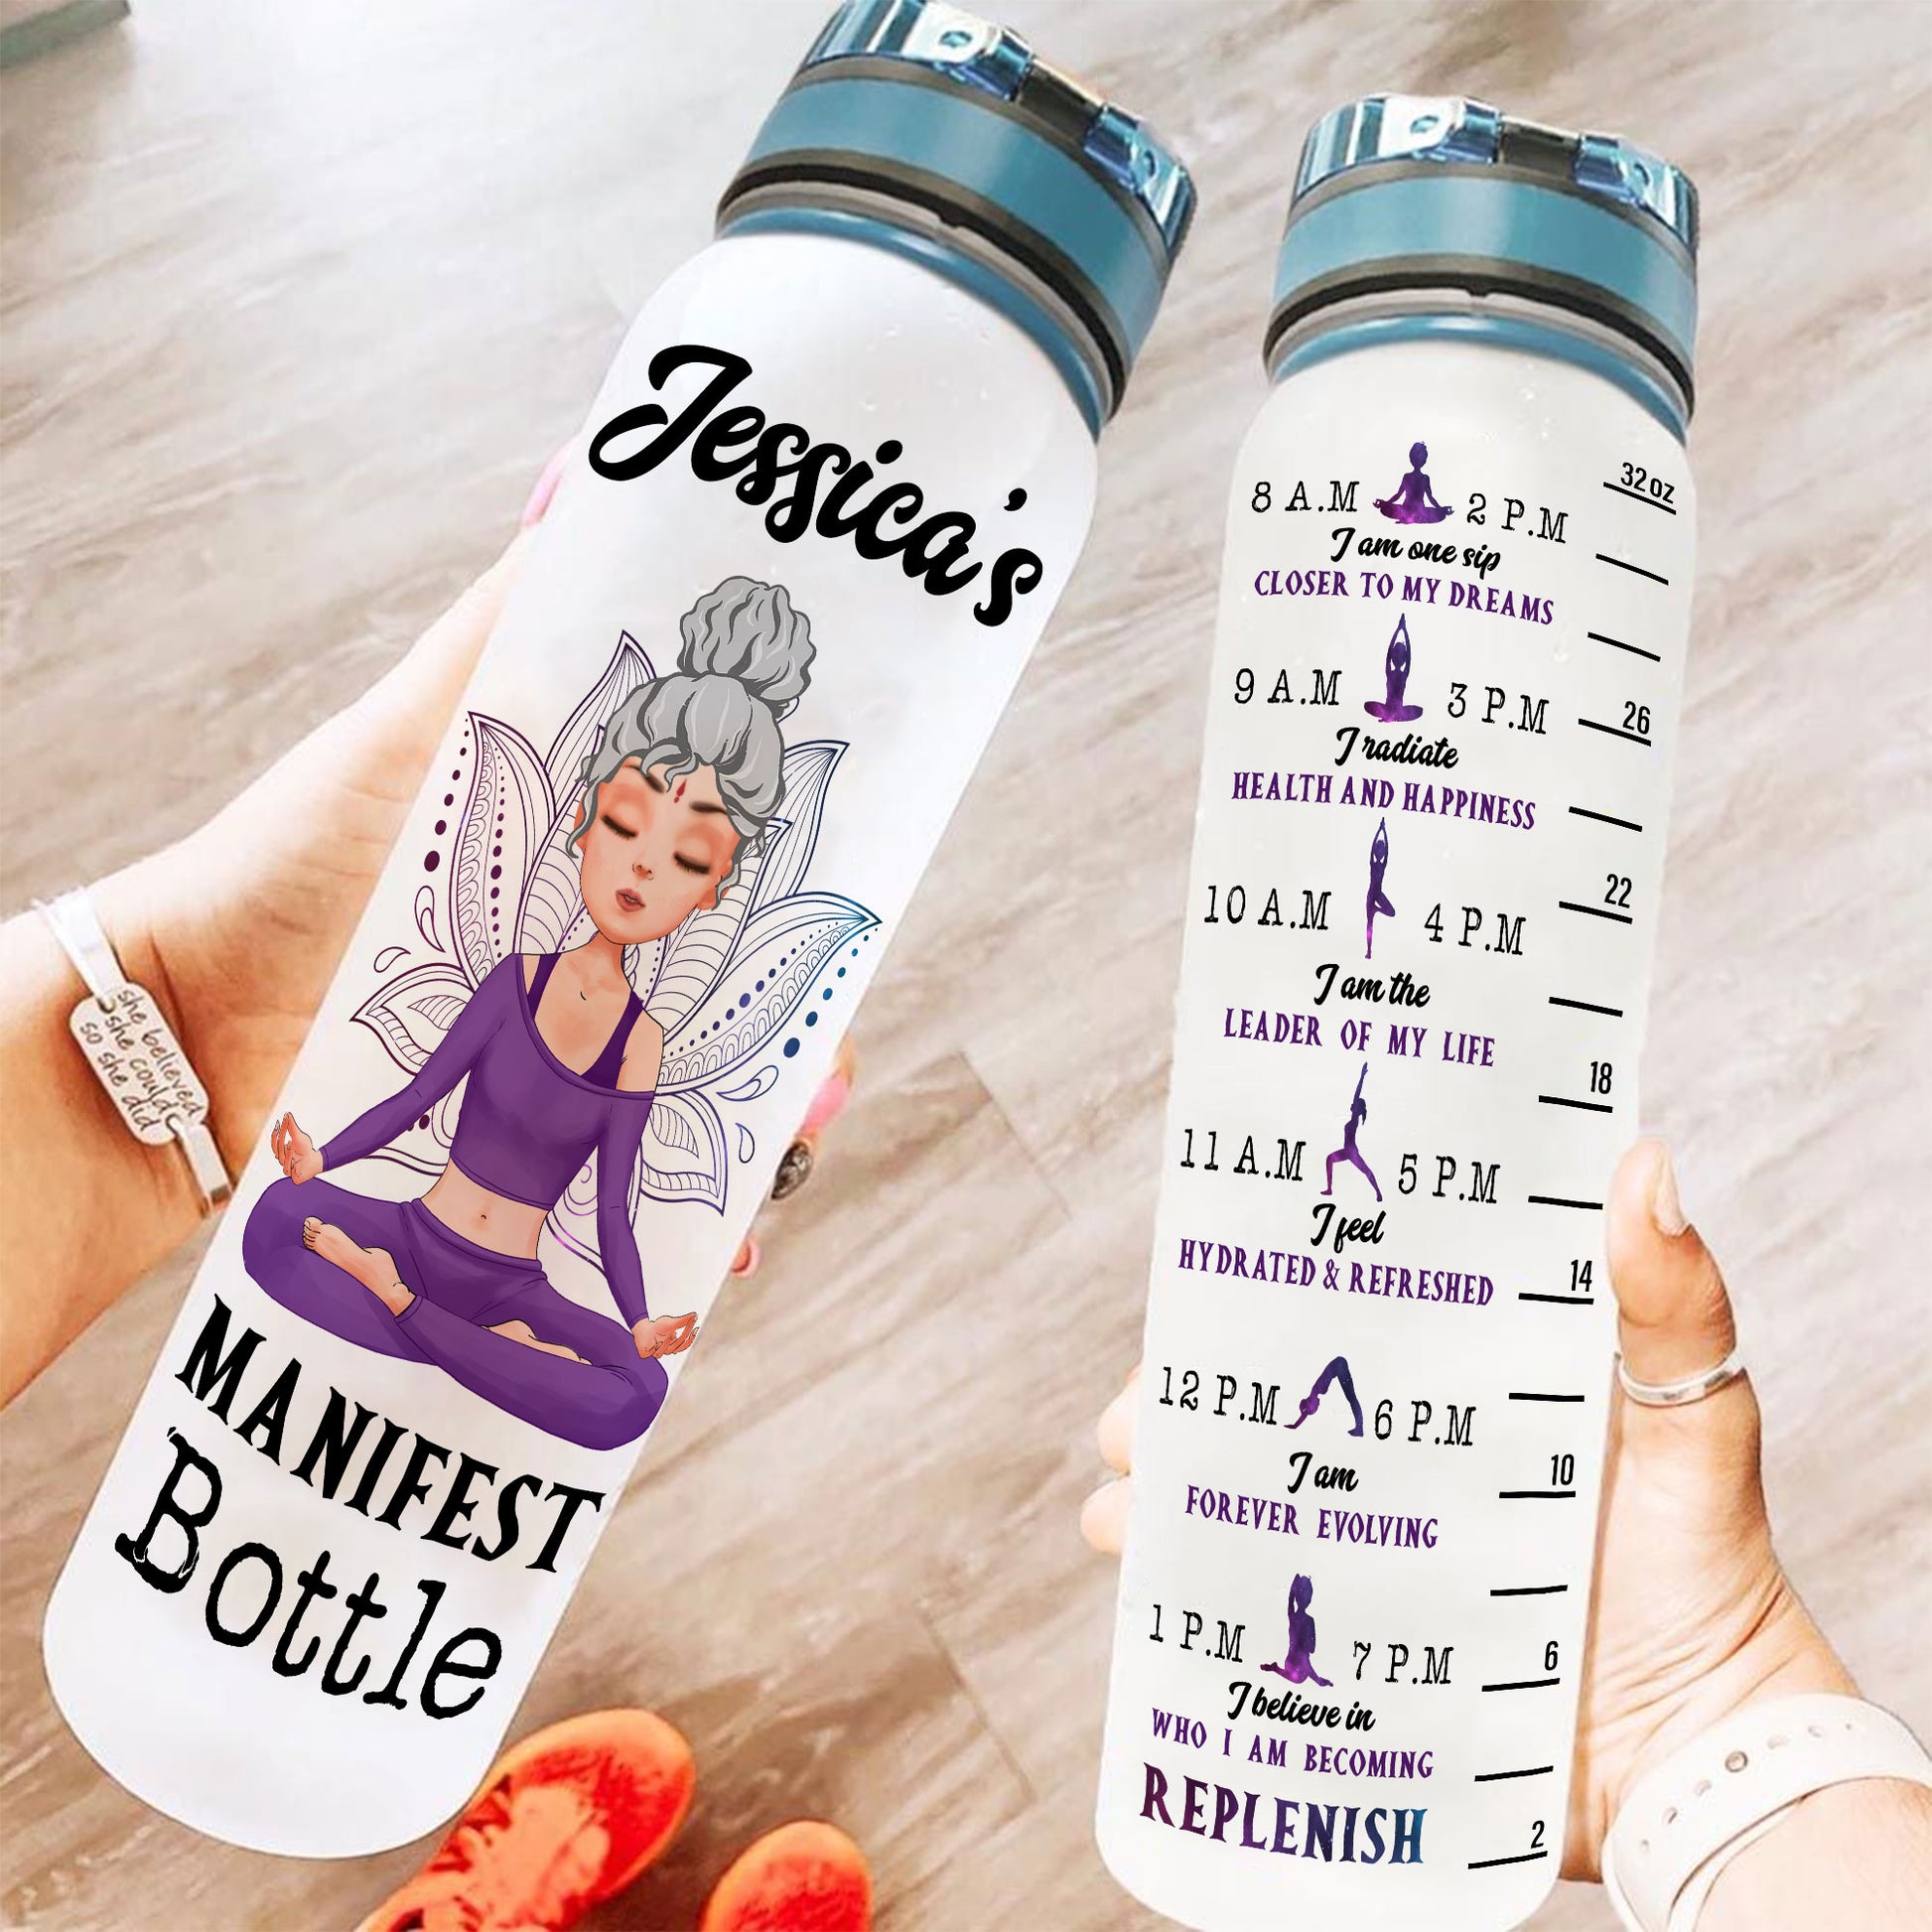 Manifest Bottle - Personalized Water Tracker Bottle - Birthday, Motivation Gift For Yoga Girl, Yoga Lover